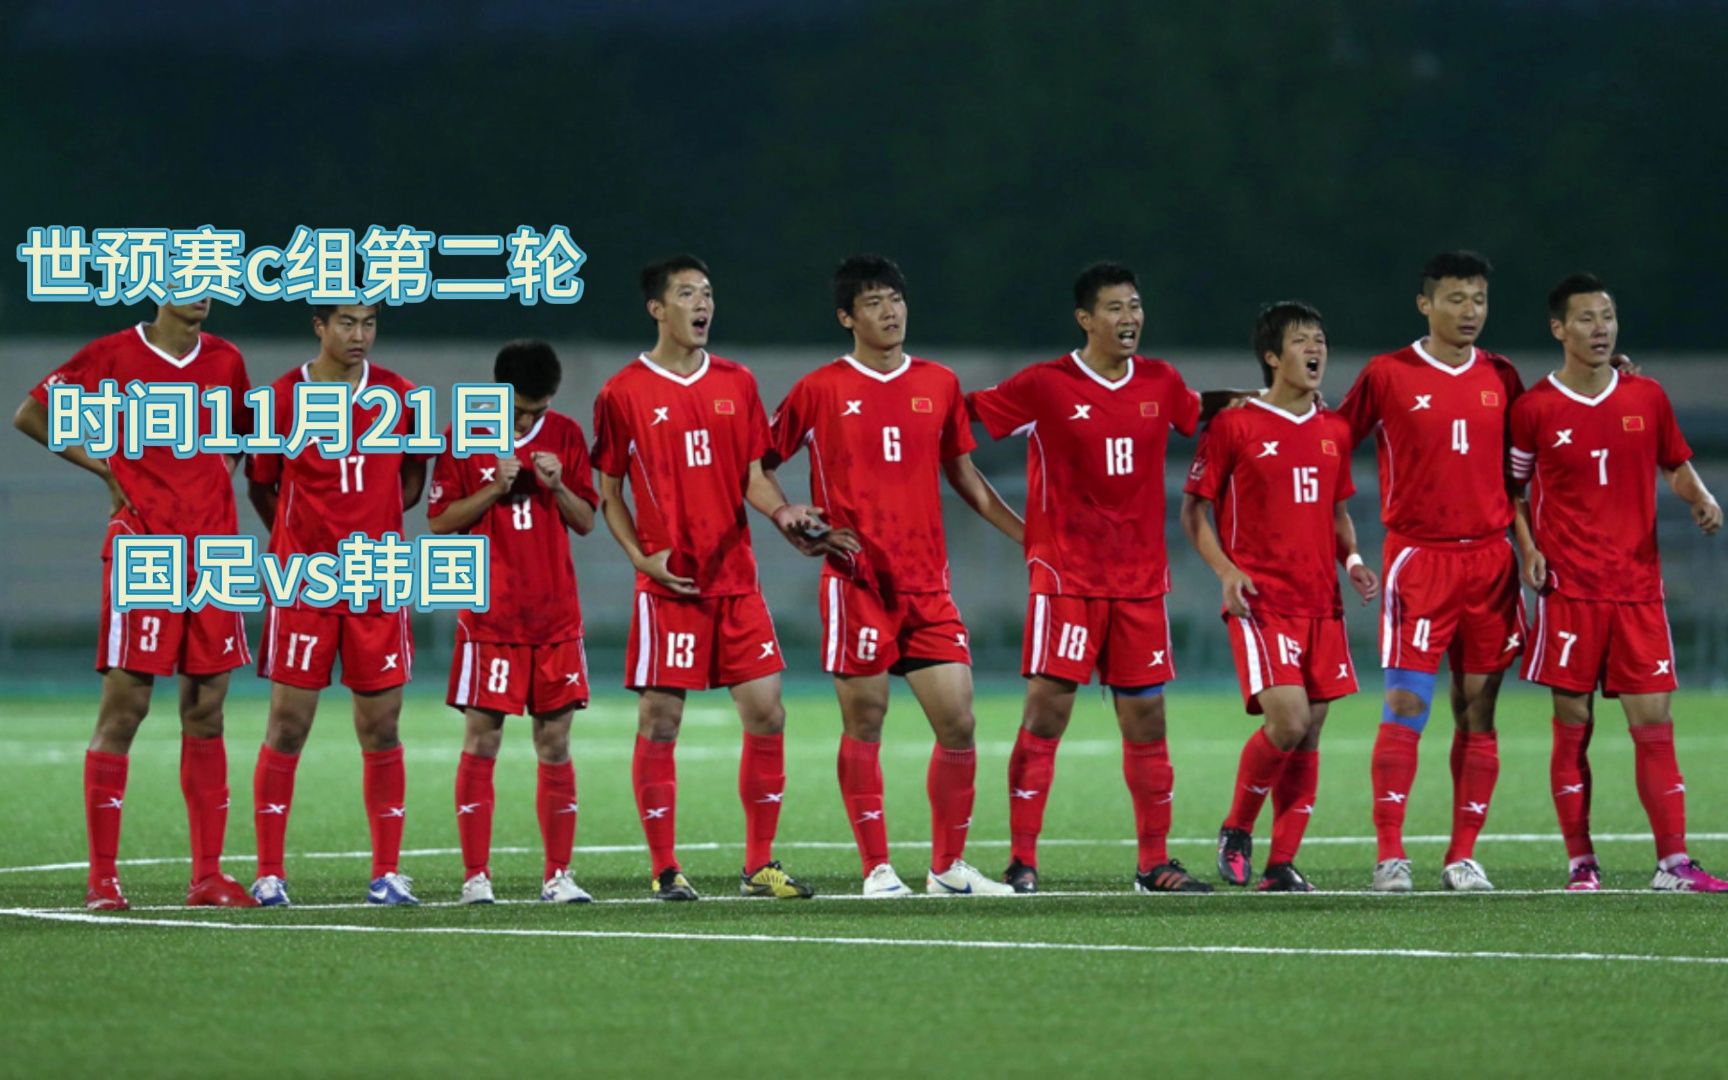 亚洲世预赛官方直播:韩国vs中国国足加油!